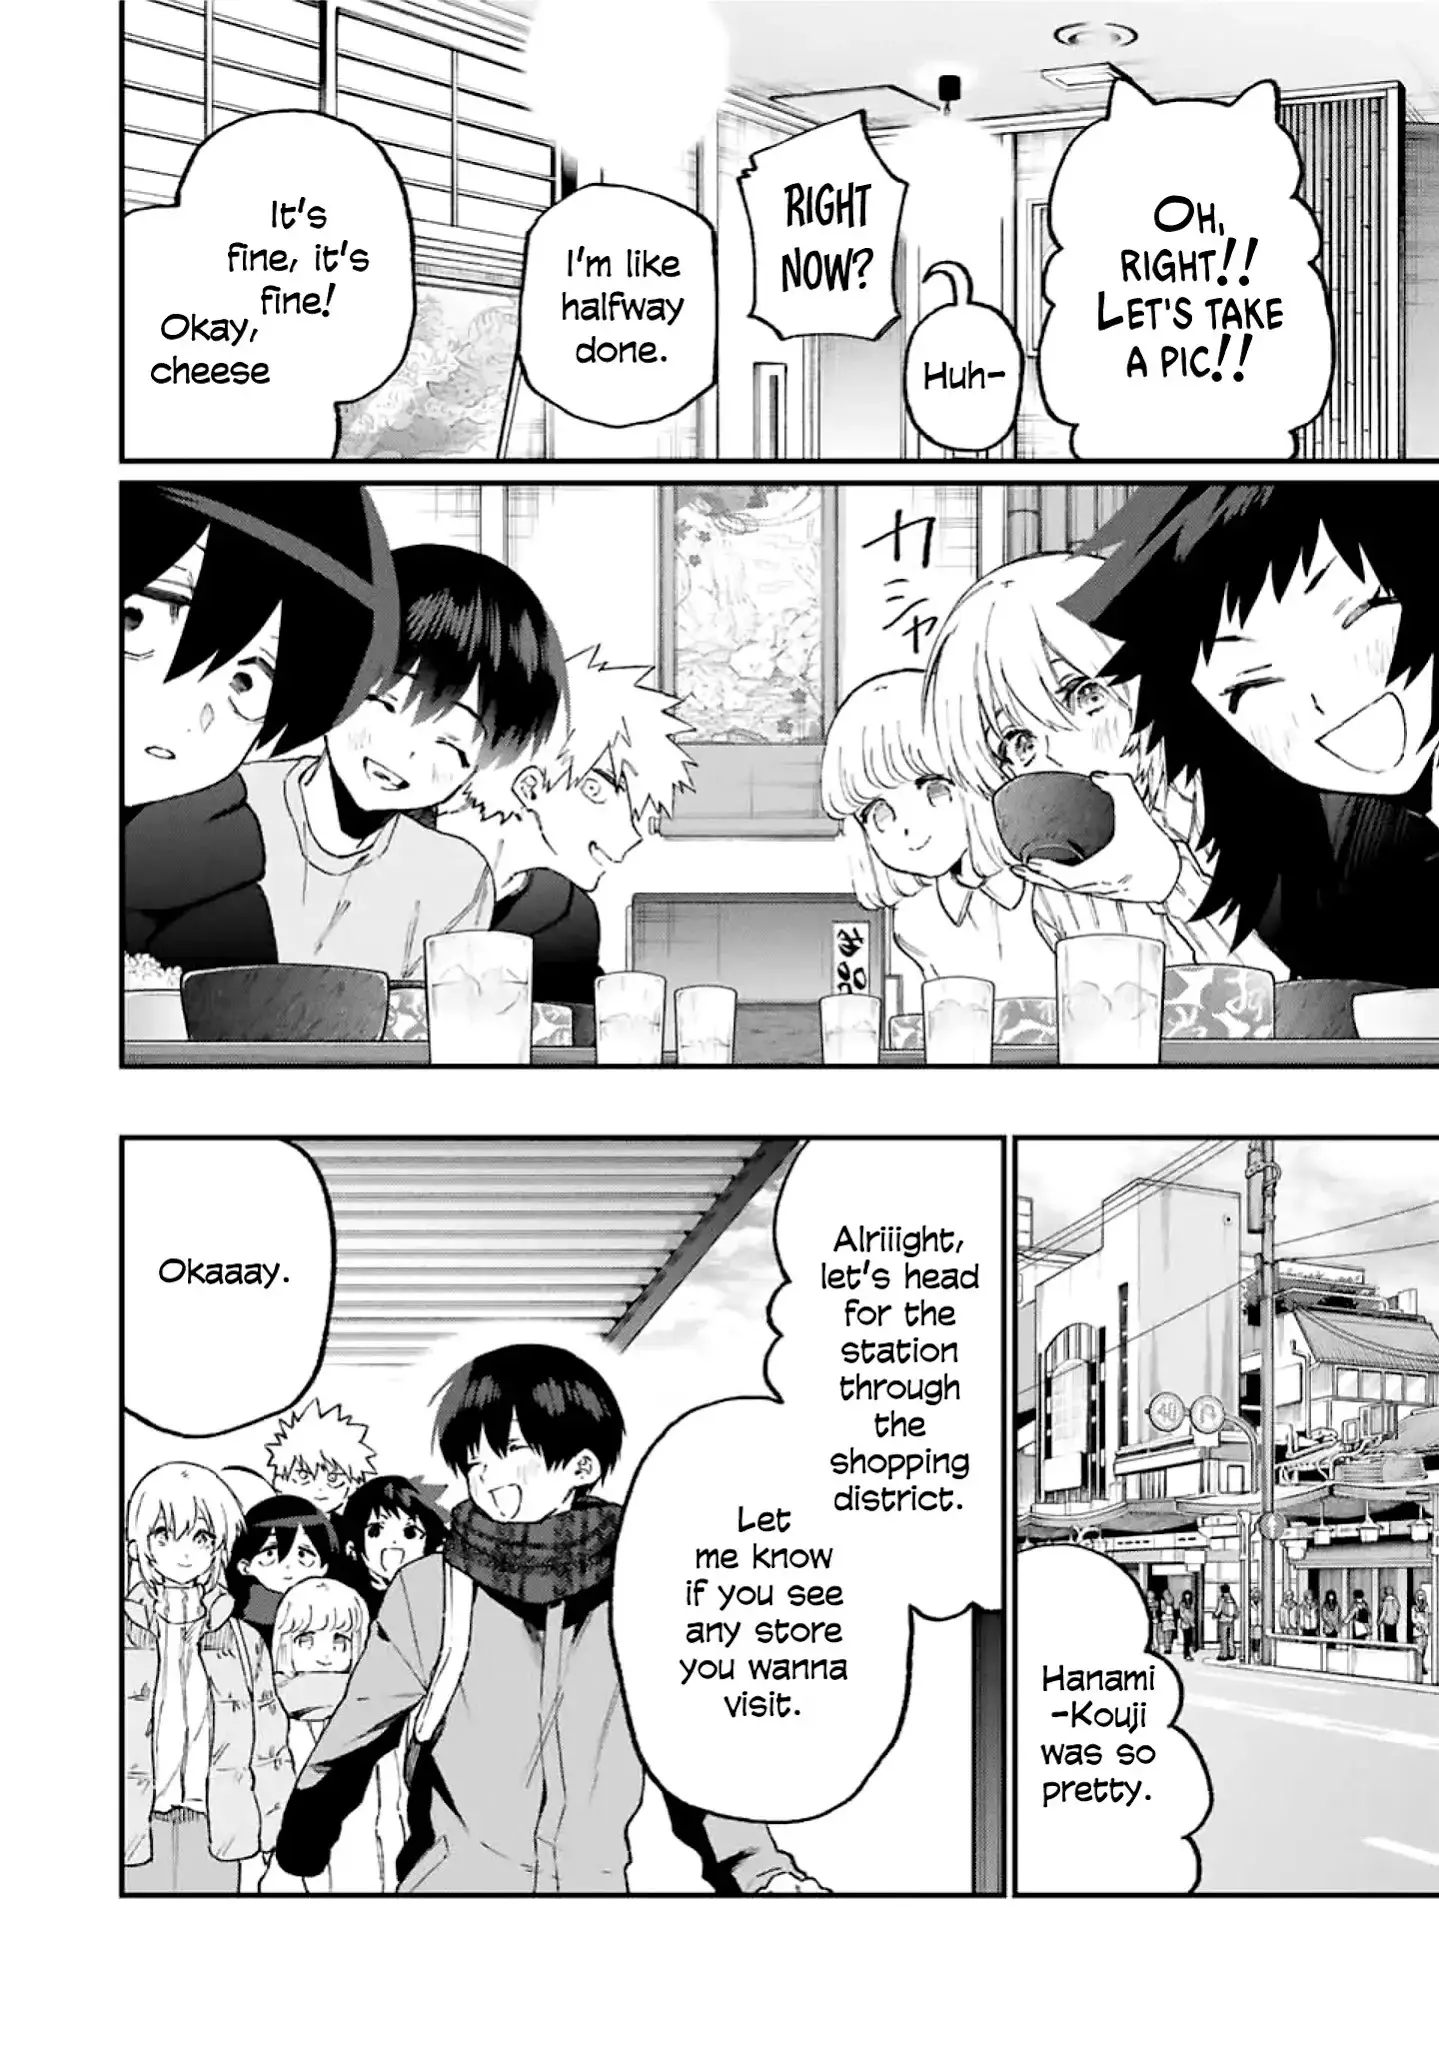 Shikimori's Not Just A Cutie - 93 page 9